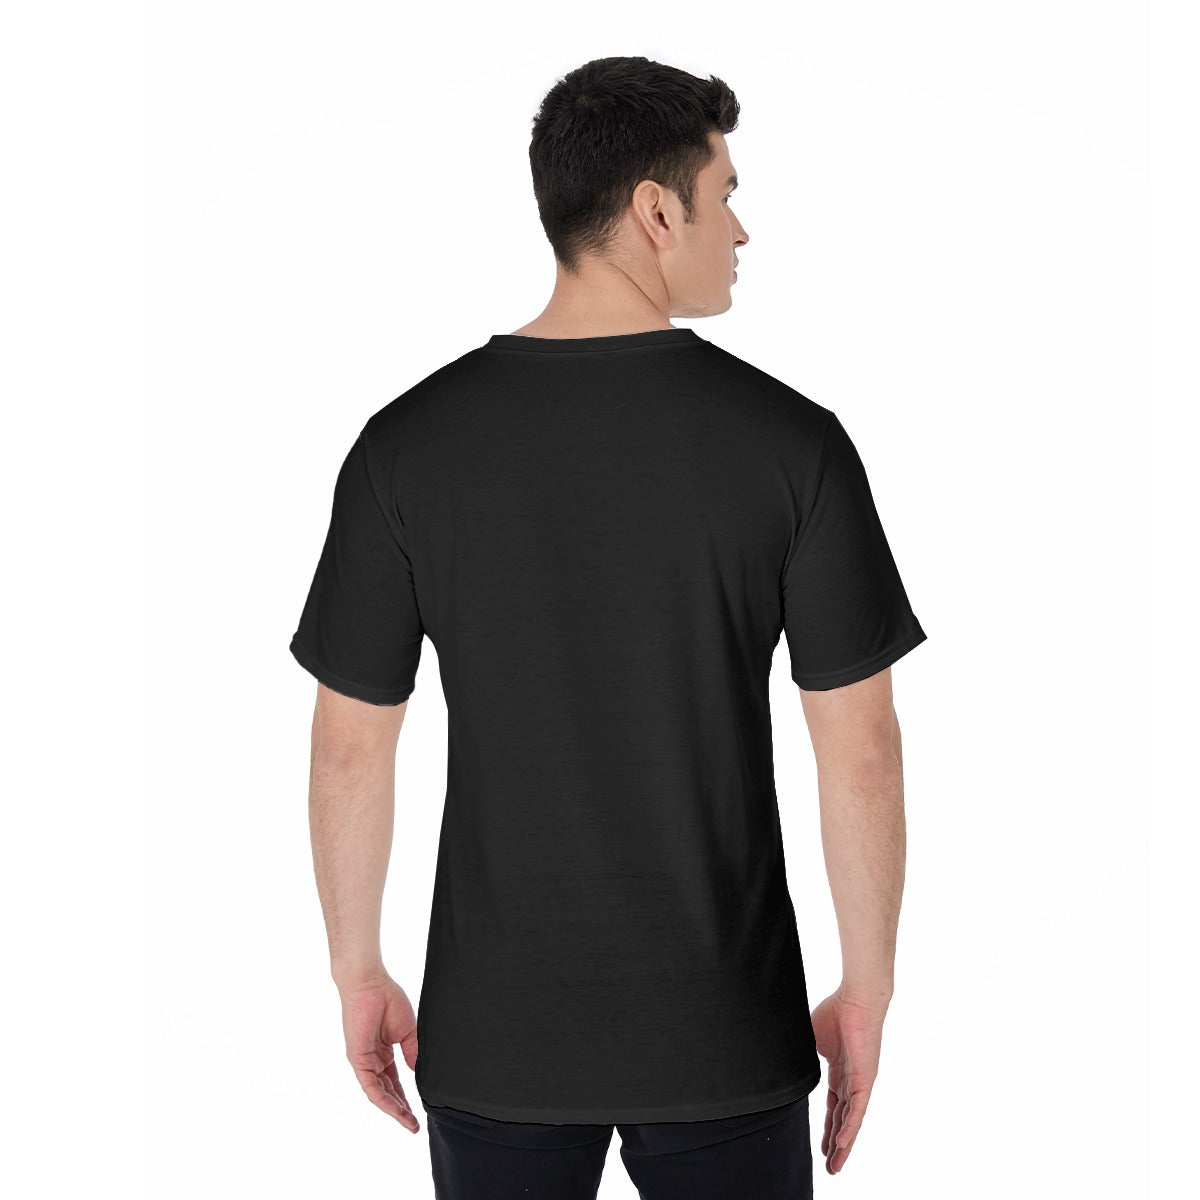 All-Over Print V-Neck T-Shirt